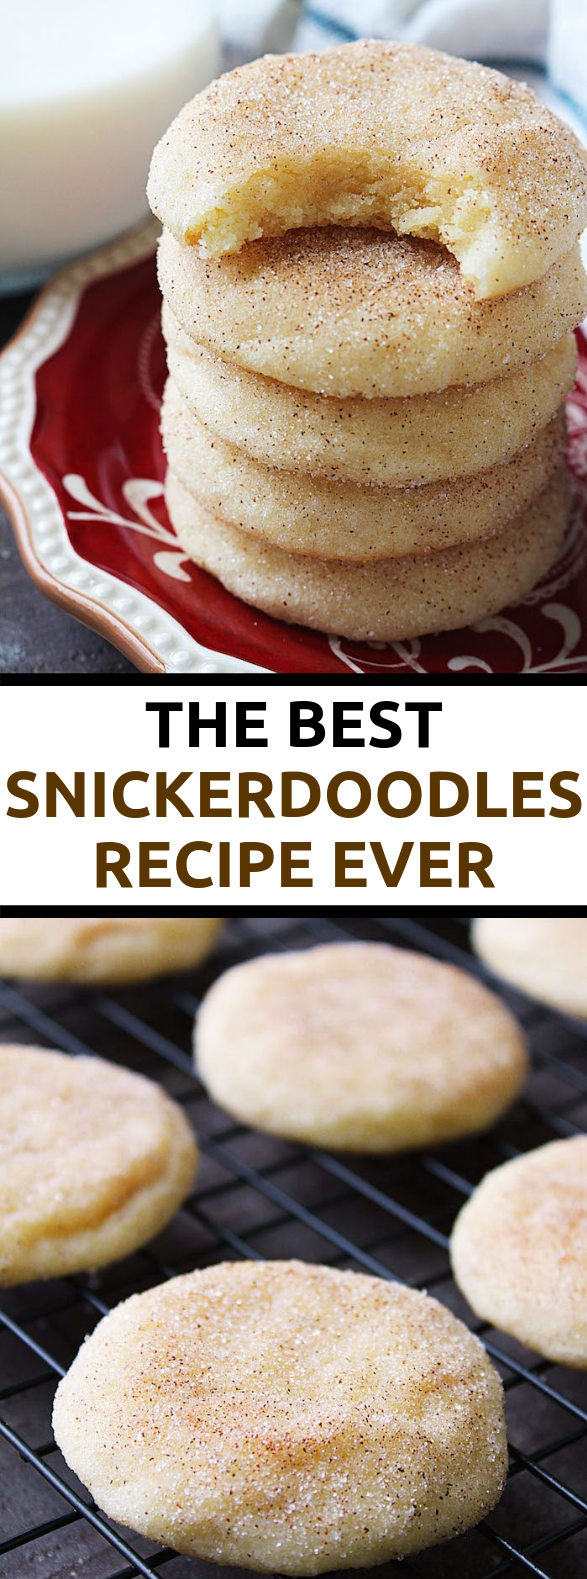 BEST SNICKERDOODLES RECIPE #dessert #cookies